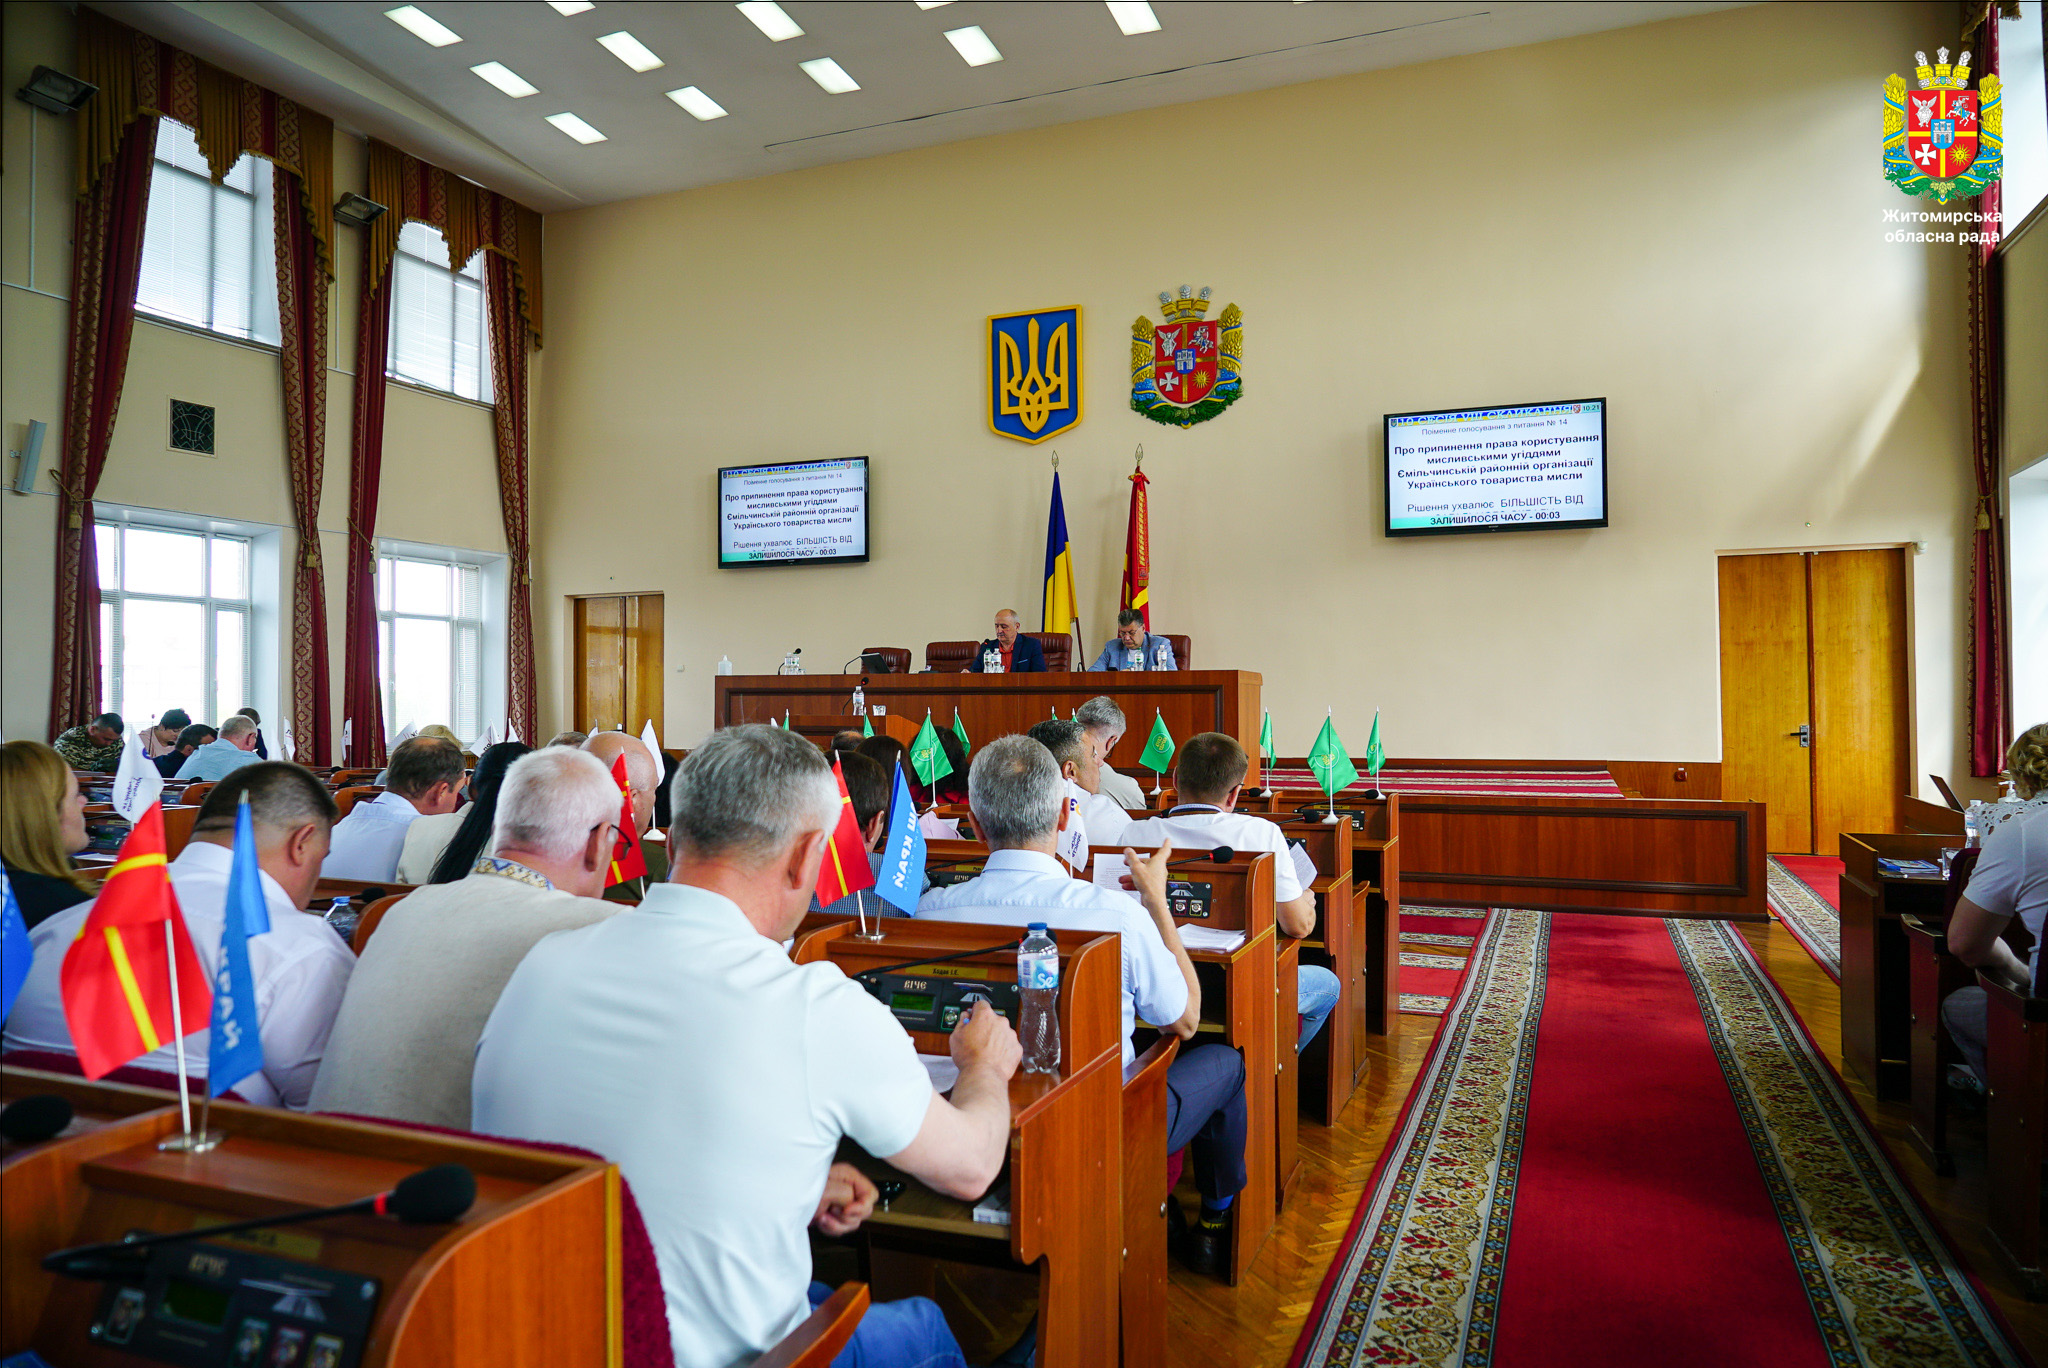 10 сесія обласної ради восьмого скликання розпочала свою роботу 